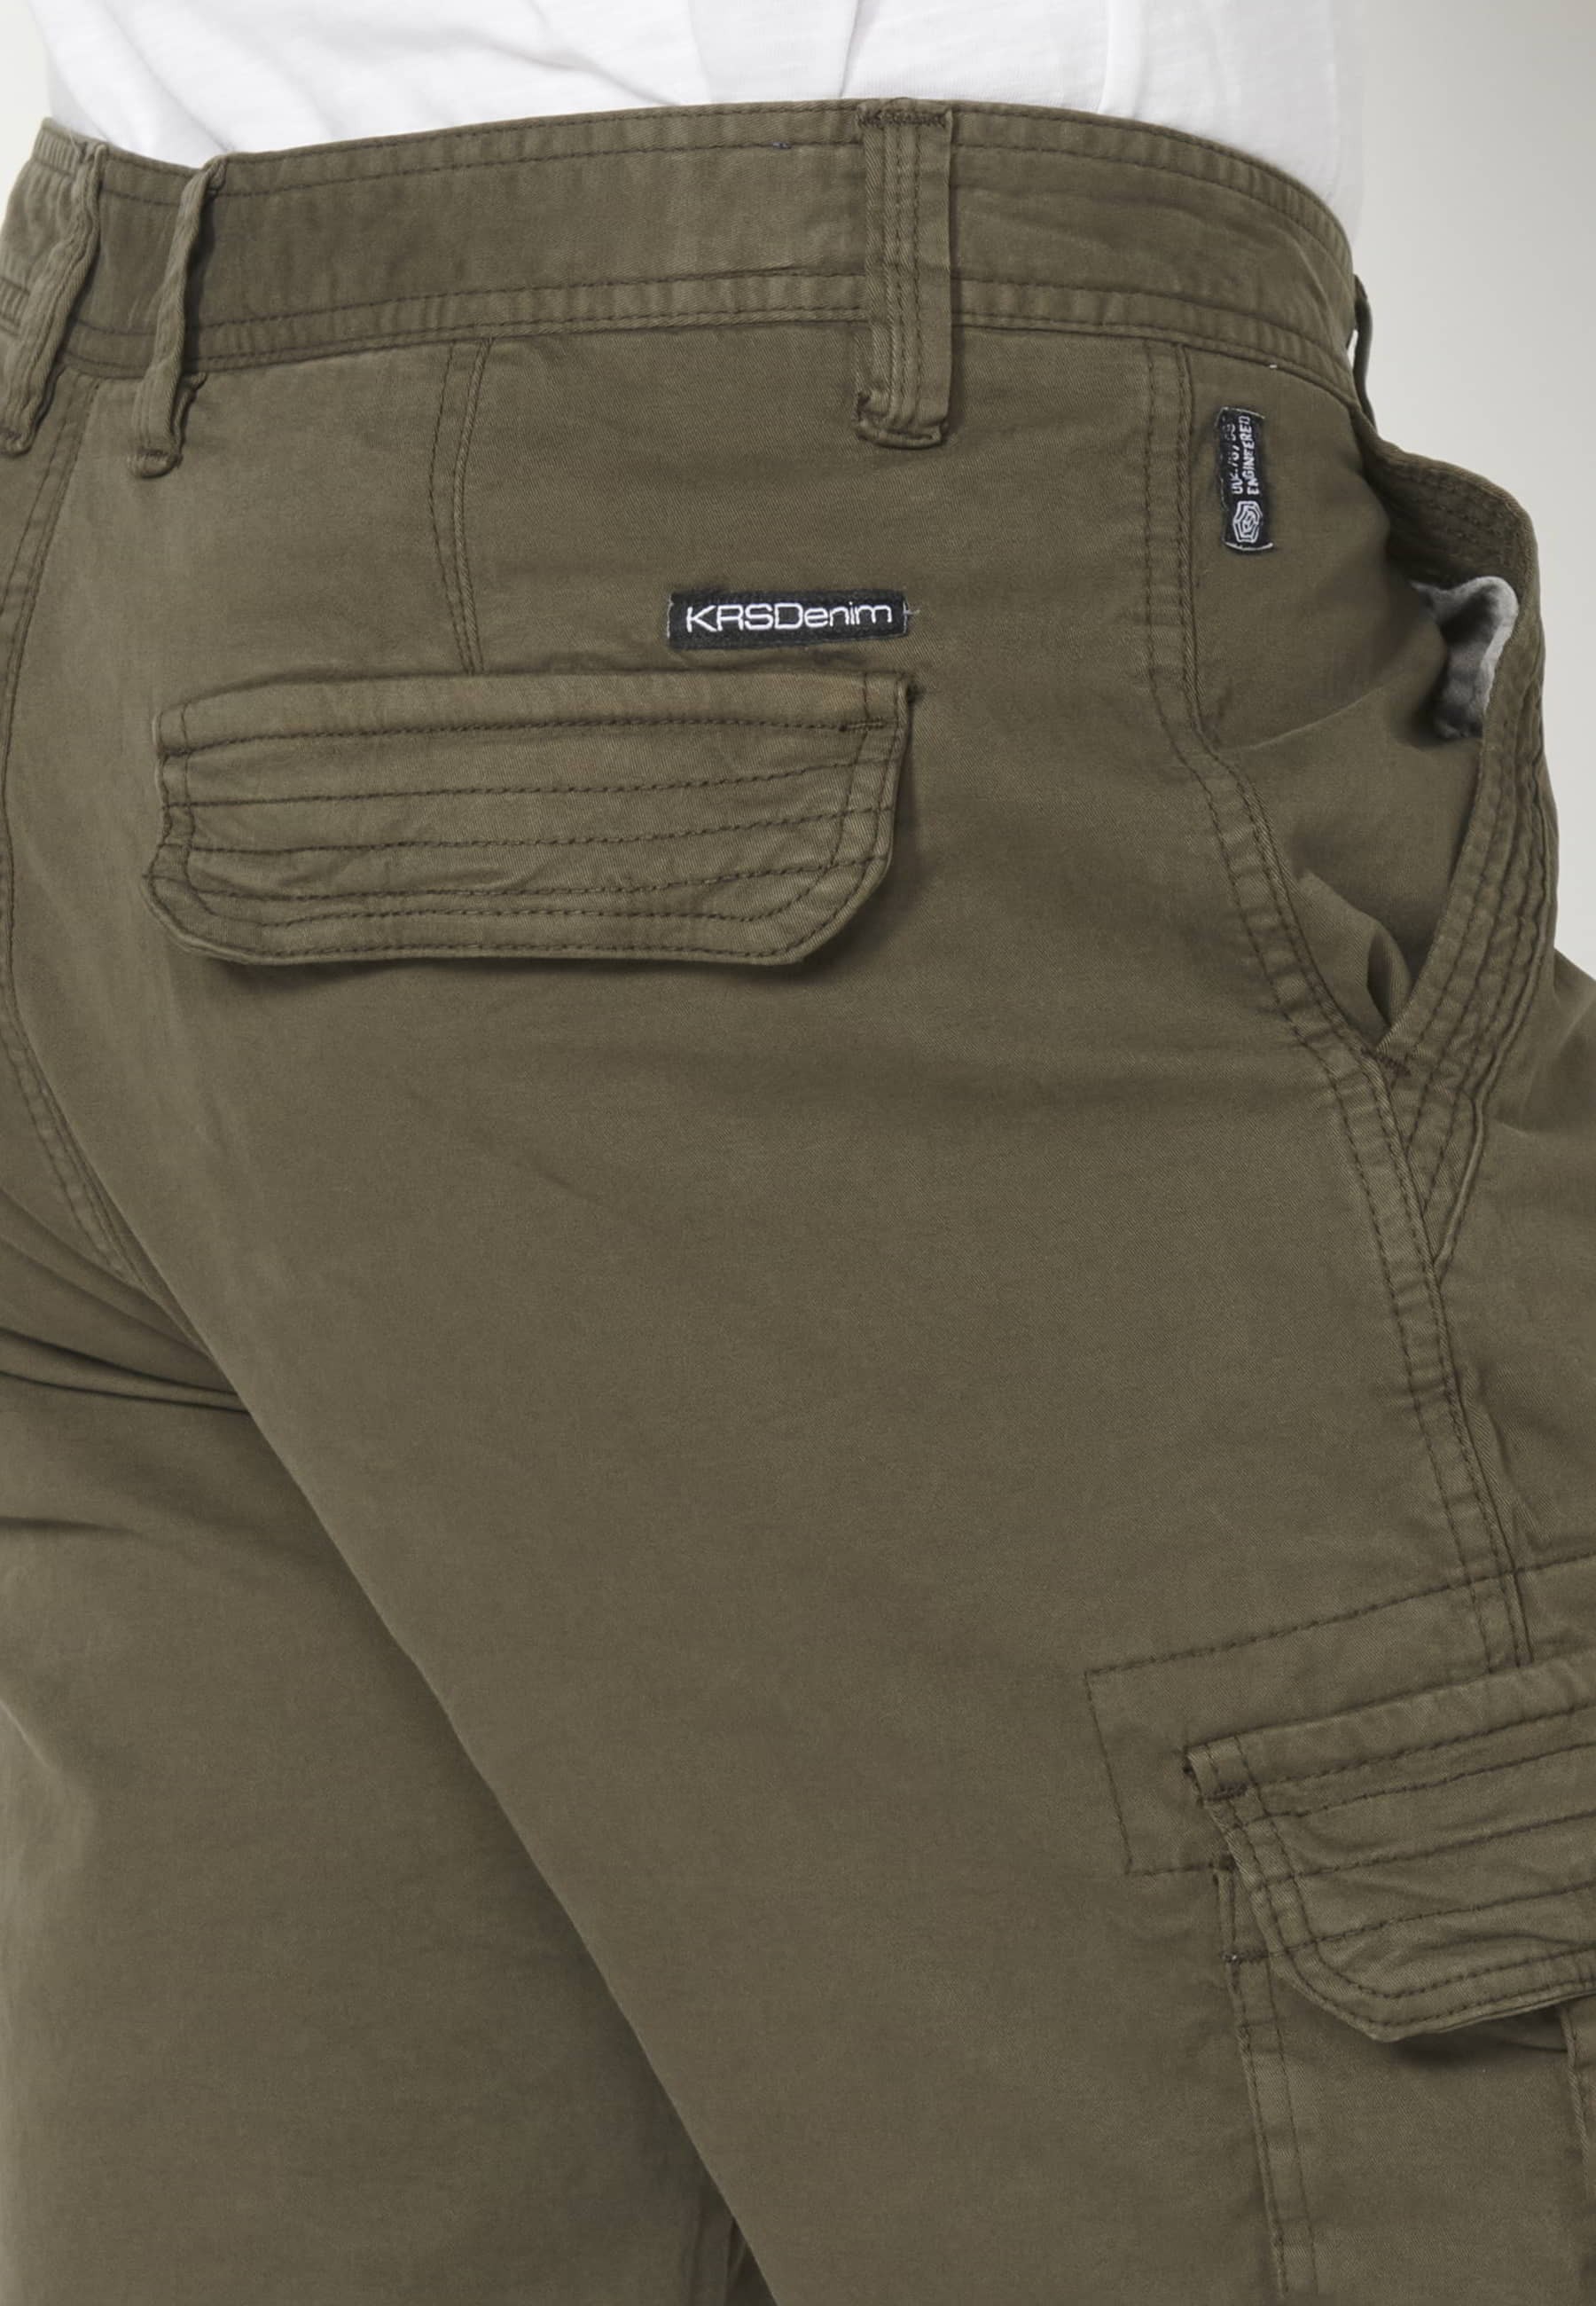 Bermuda cargo shorts Olive color for Men